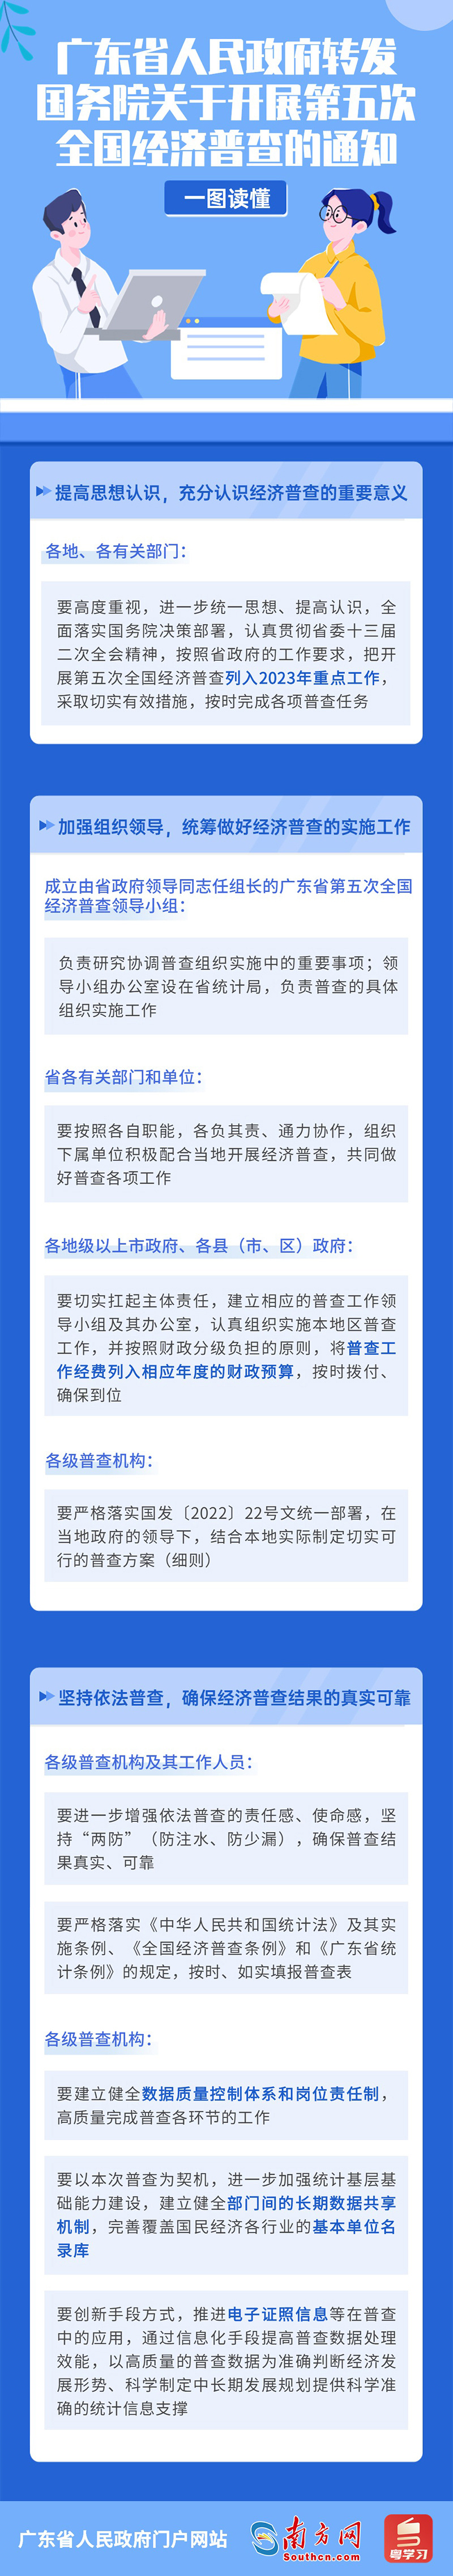 一图读懂广东省人民政府转发国务院关于开展第五次全国经济普查的通知